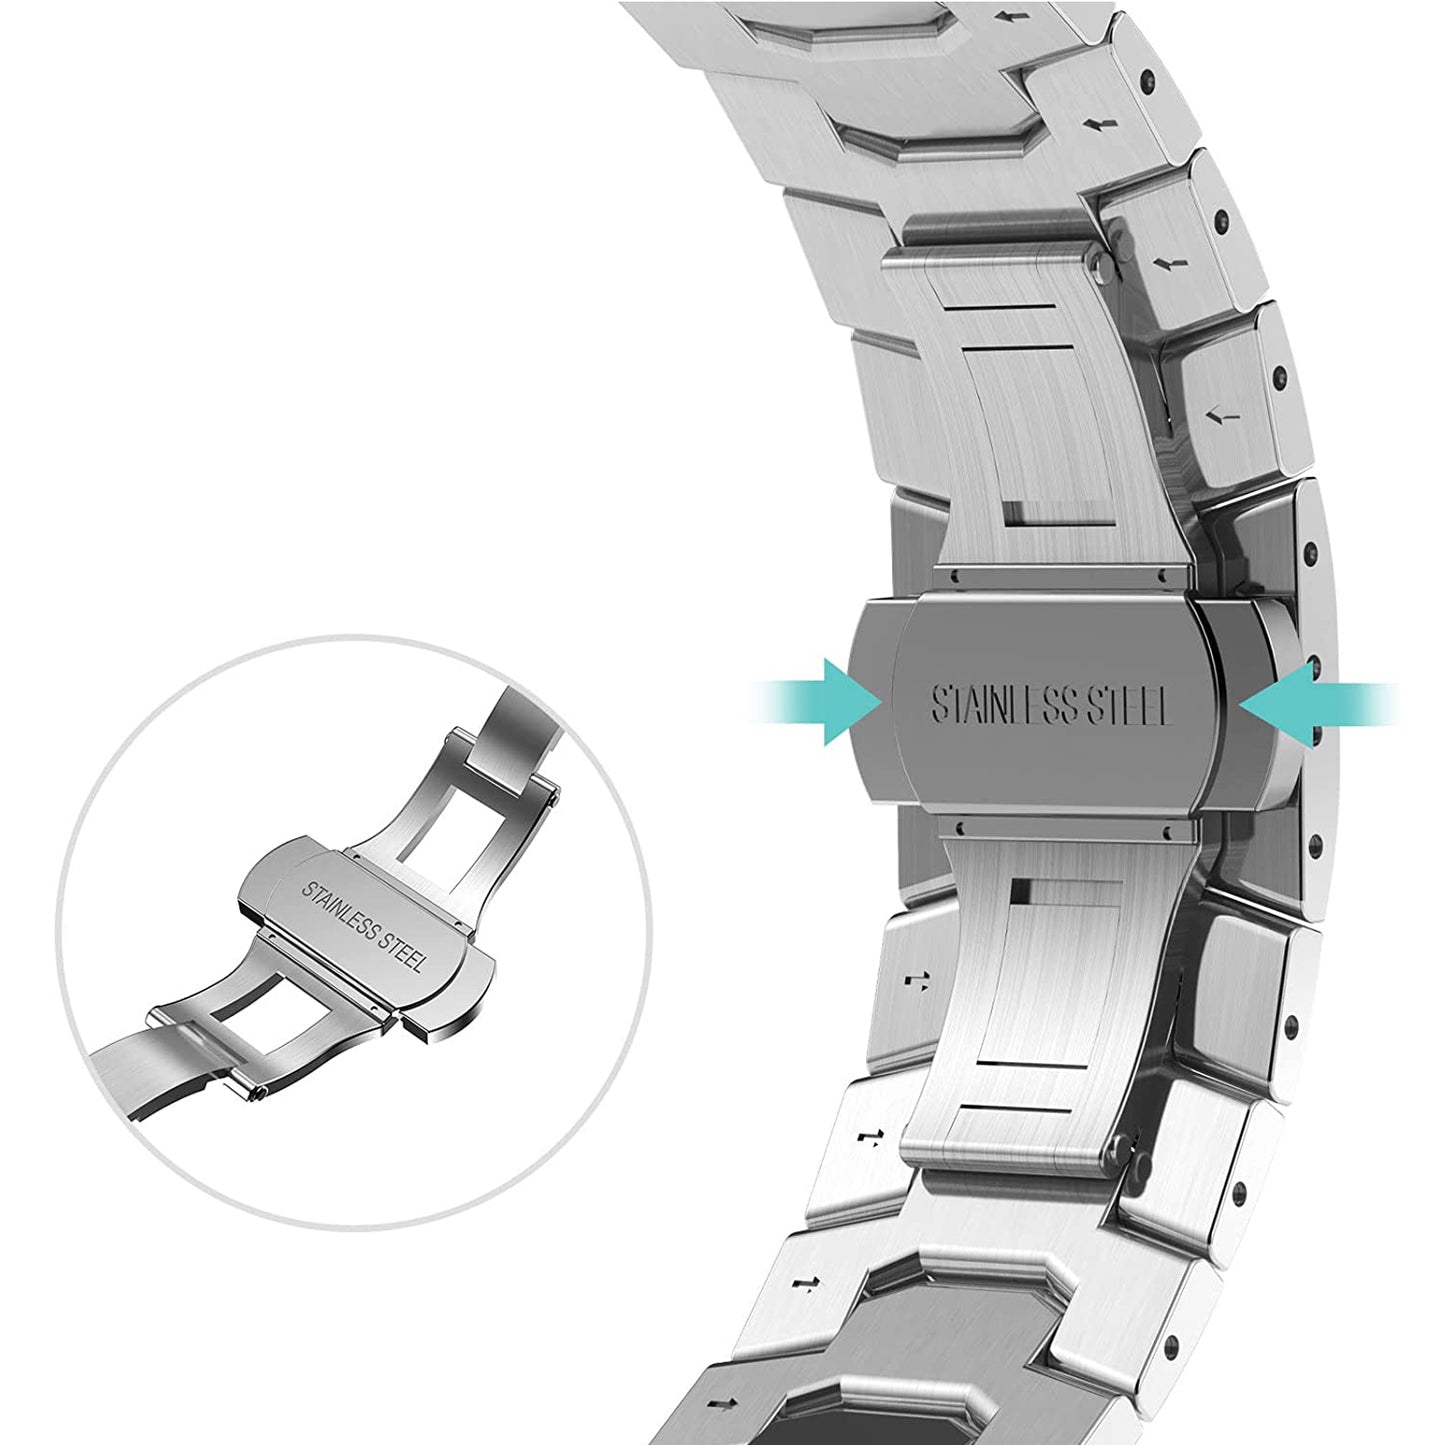 arktisband Apple Watch Edelstahl Armband